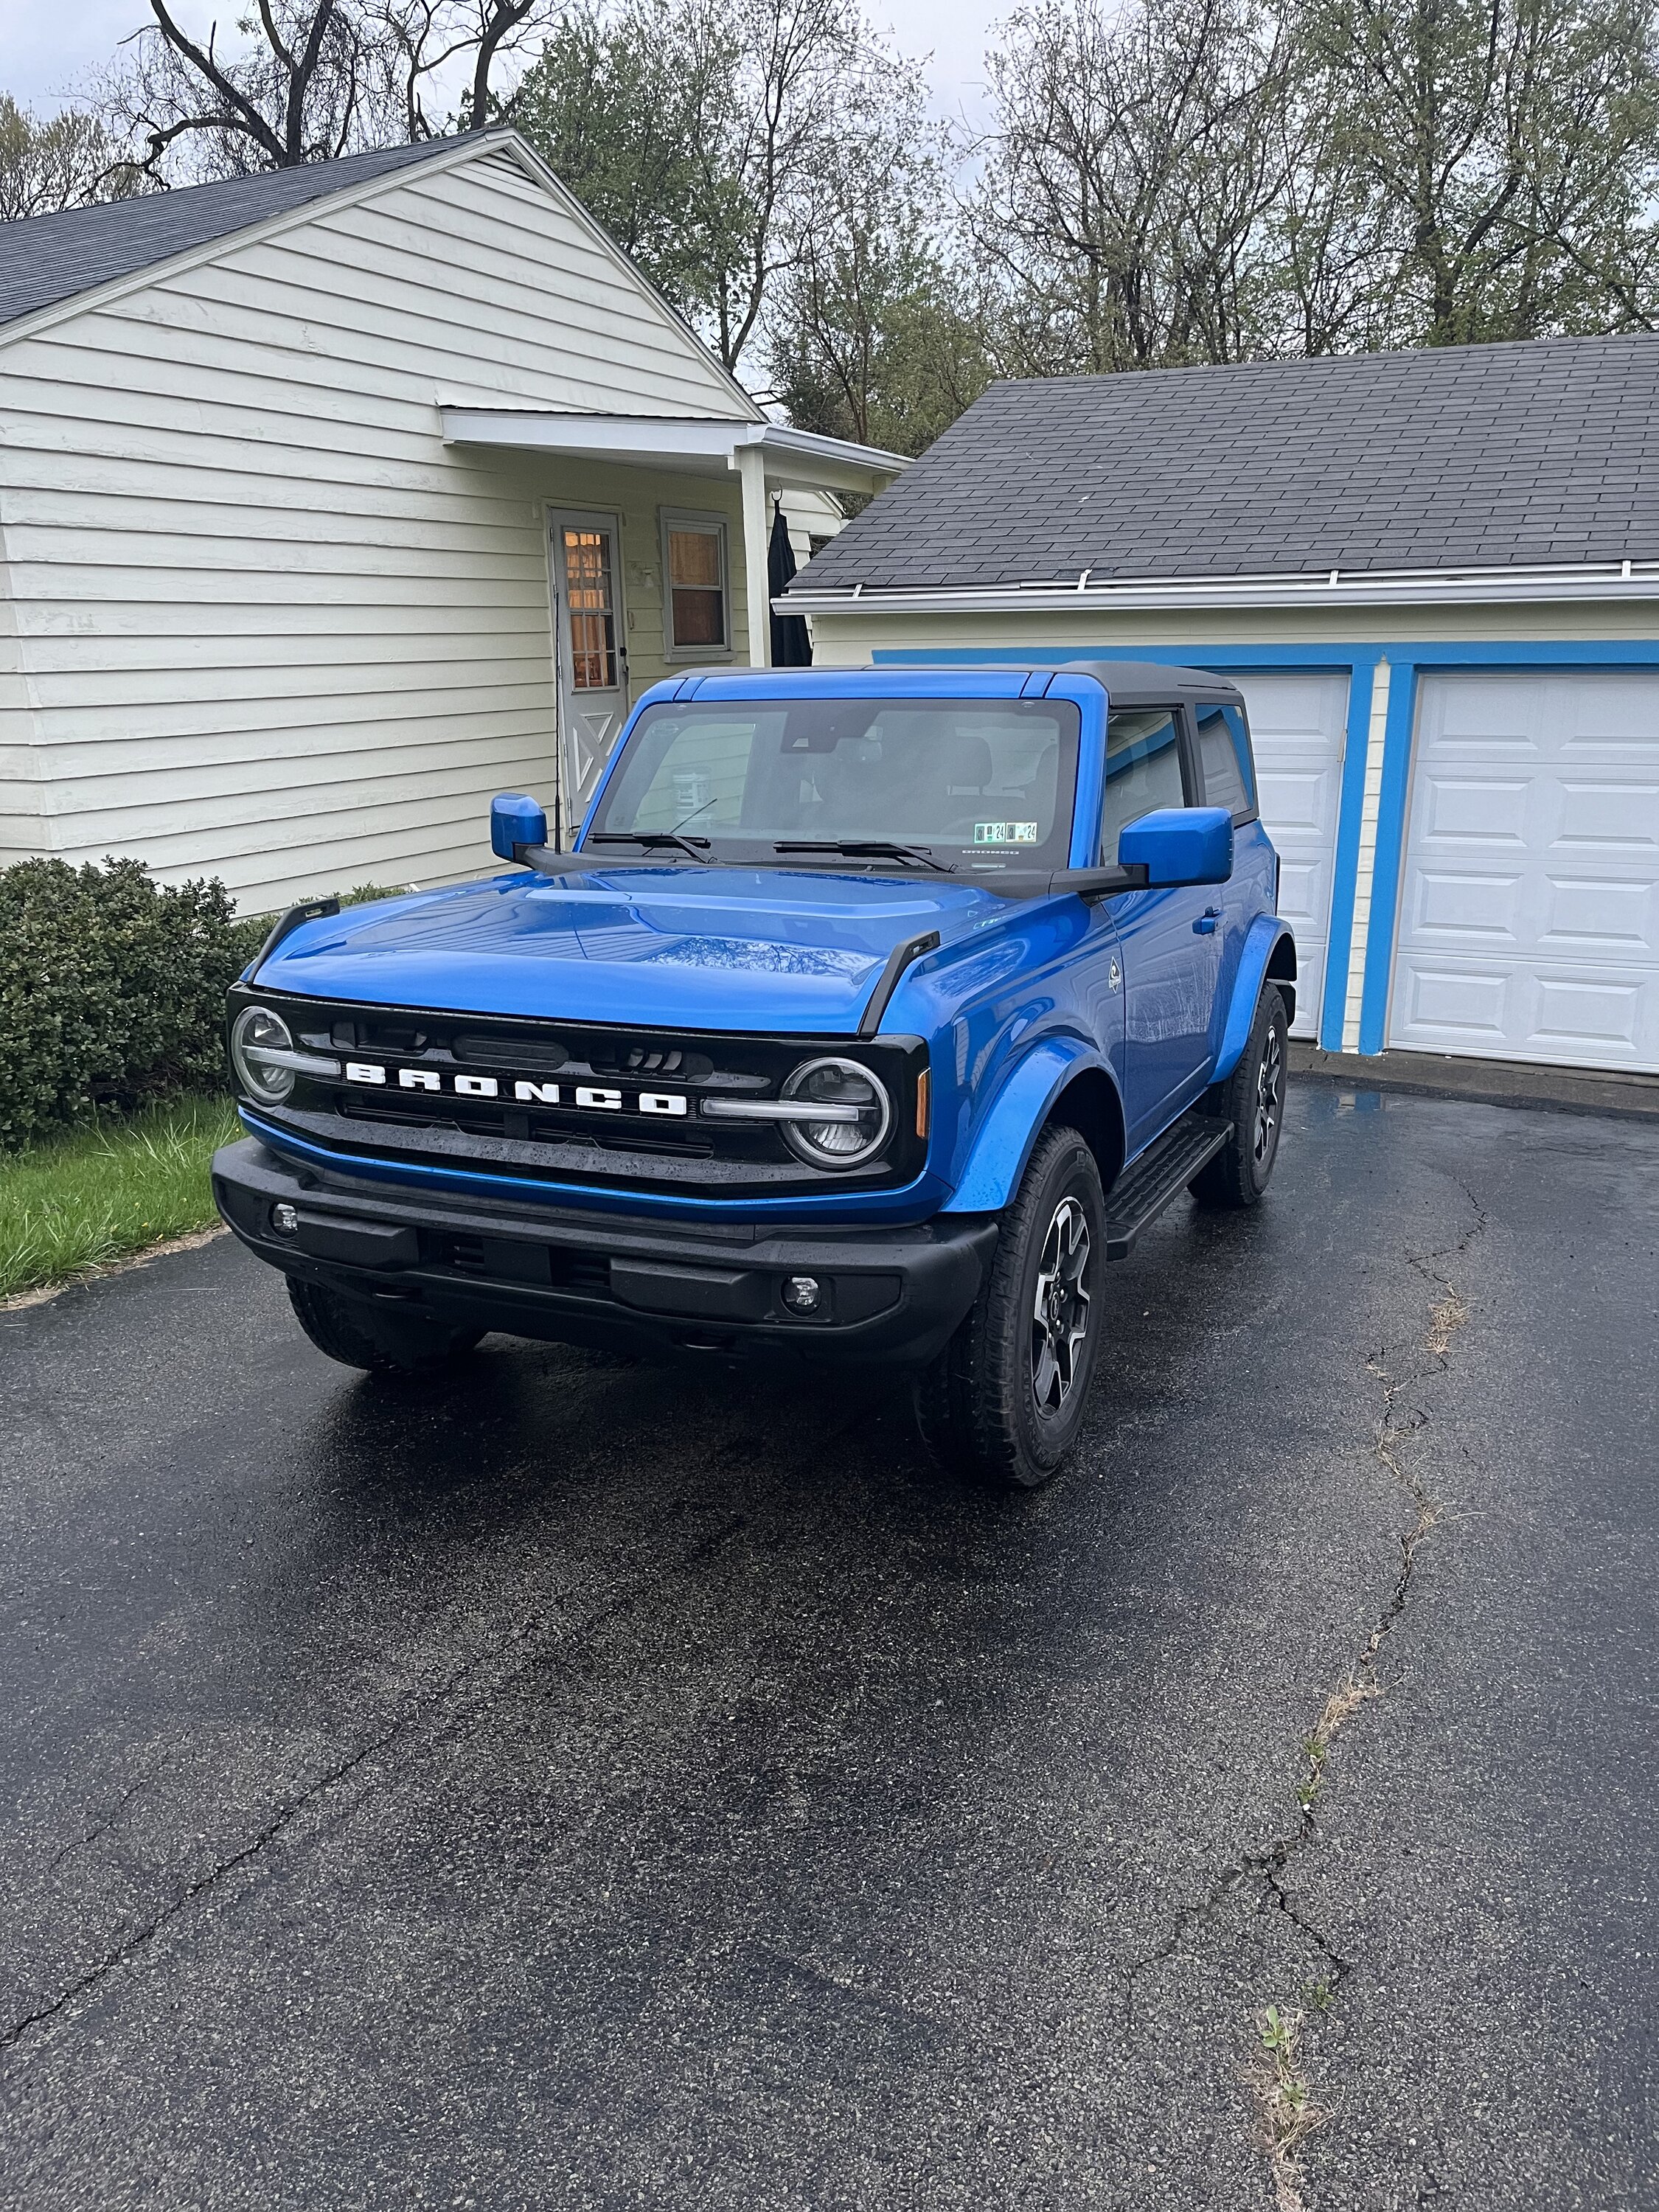 Ford Bronco VELOCITY BLUE Bronco Club 38A90A68-9641-4A8A-9209-EC442C445E53